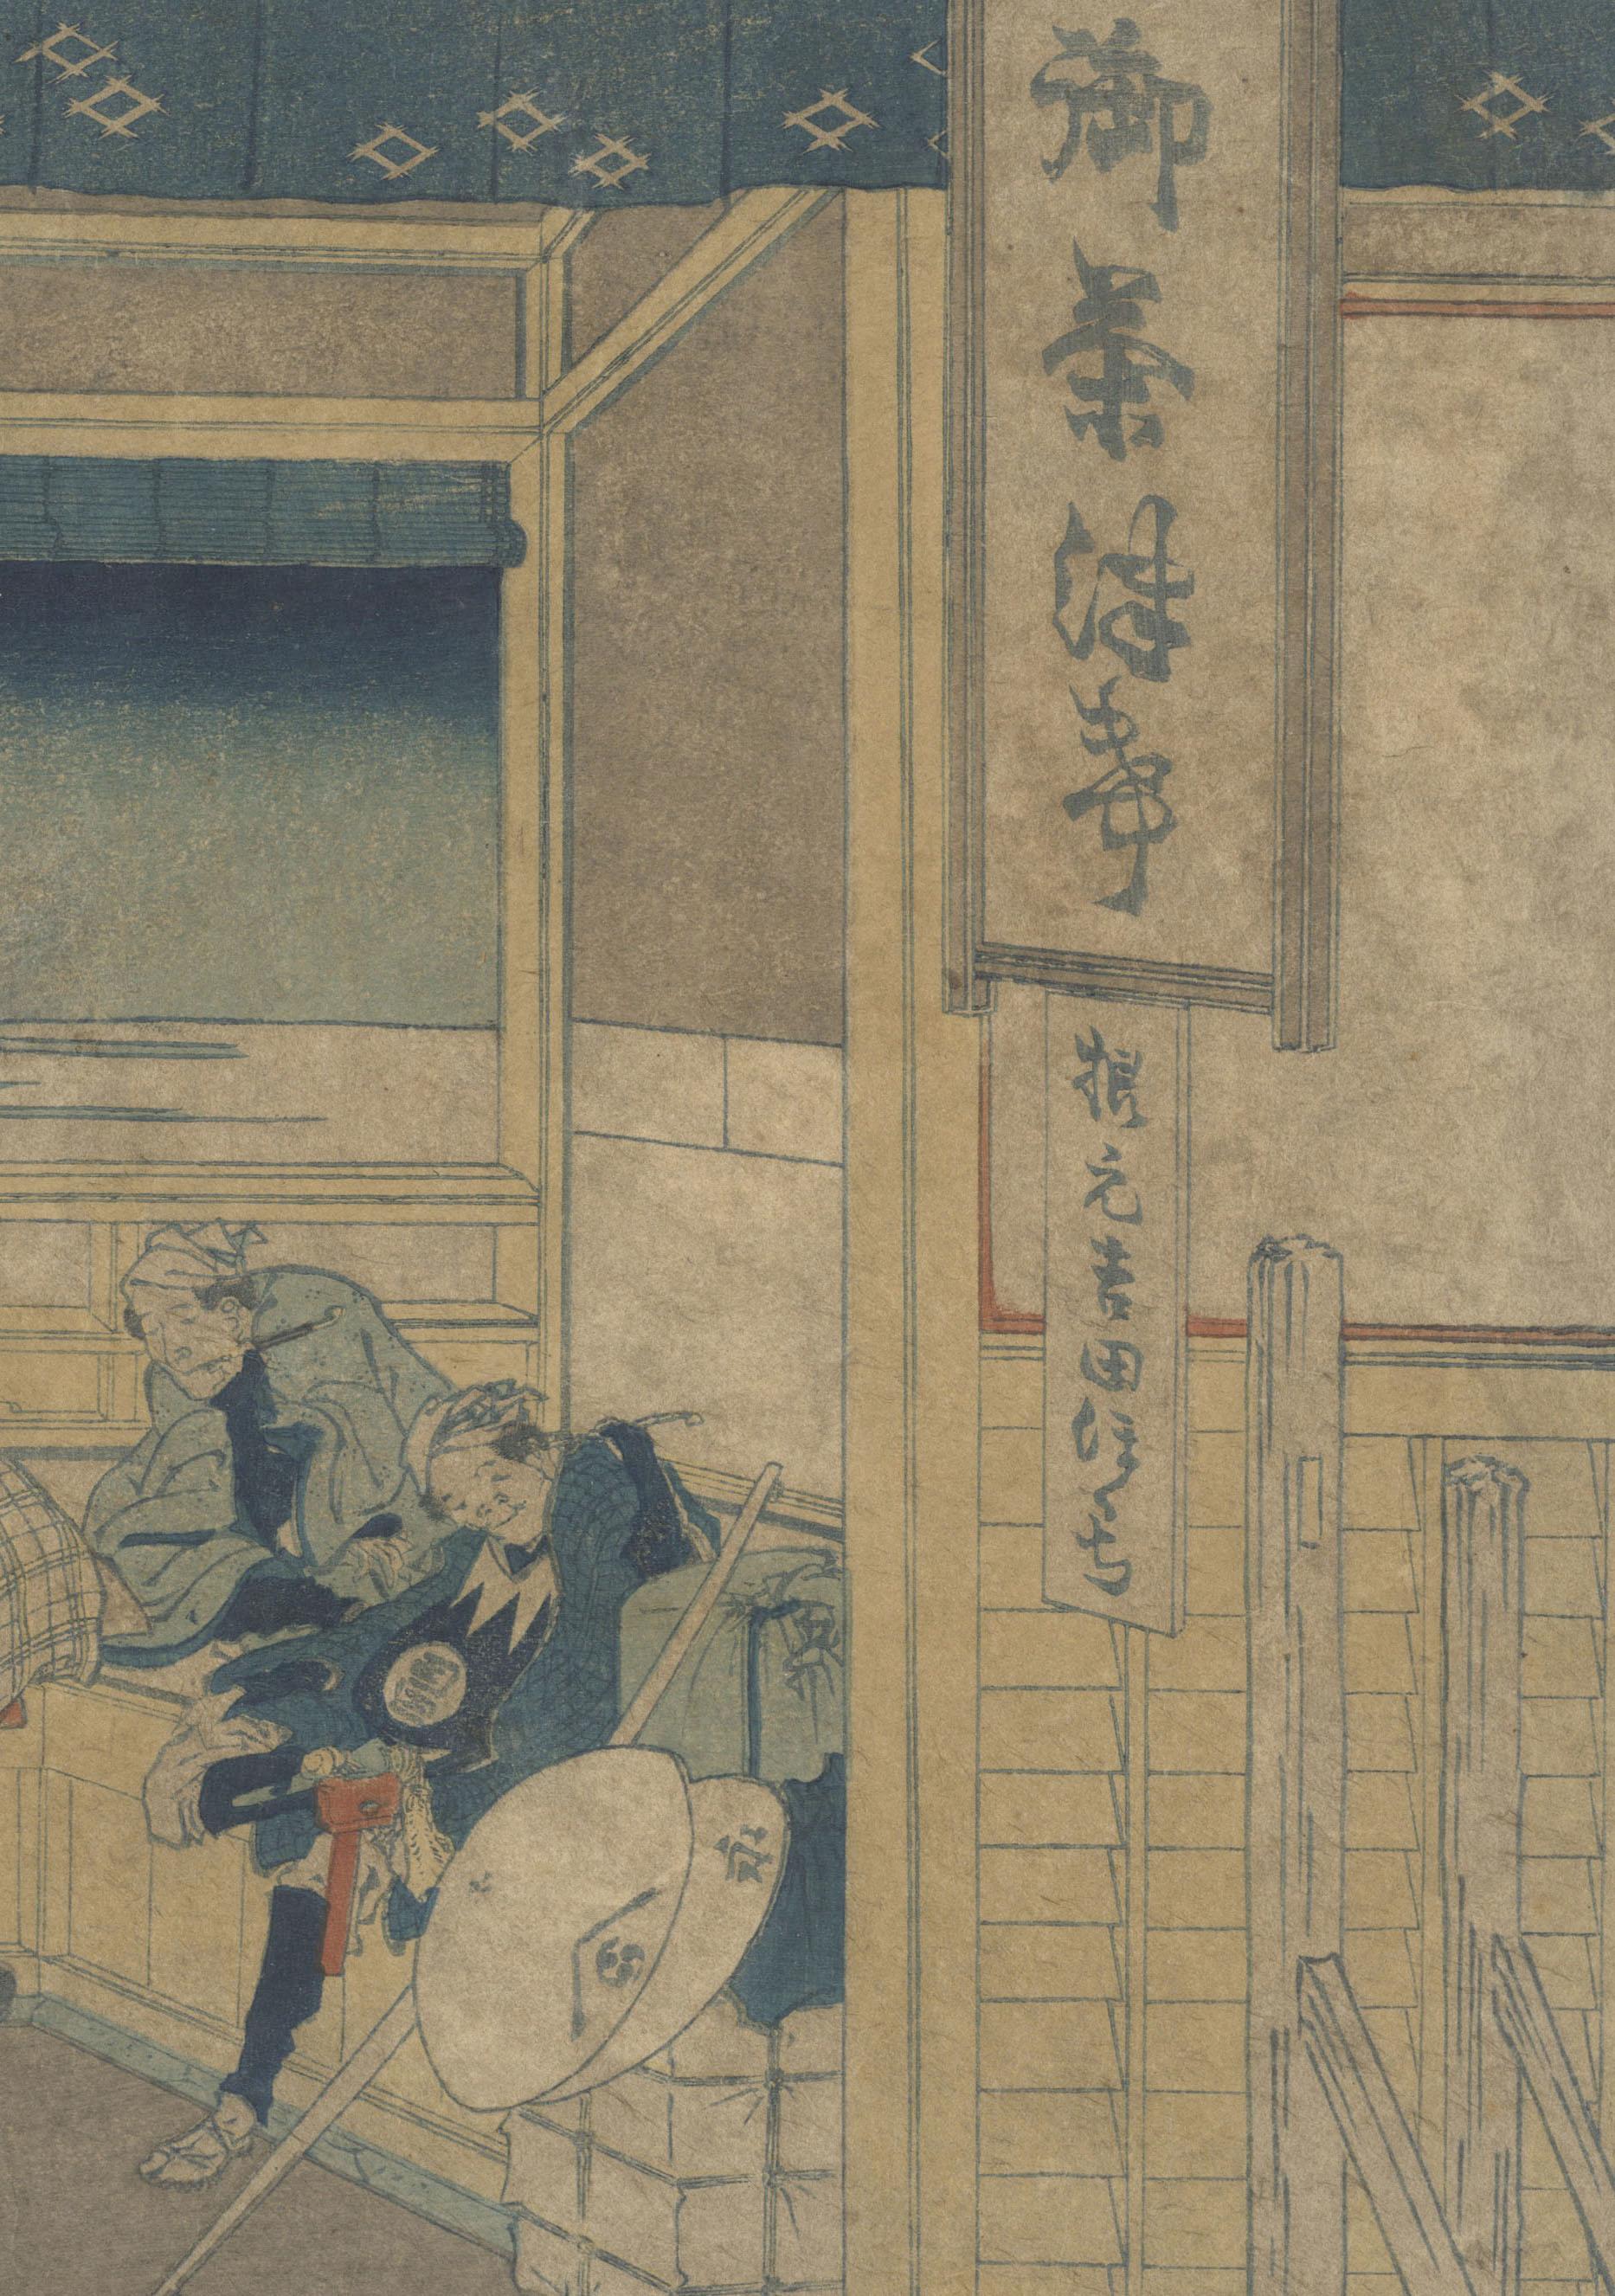 Edo Hokusai, 36 Views of Mount Fuji, Yoshida, Tokaido, 19th Century Woodblock Print For Sale